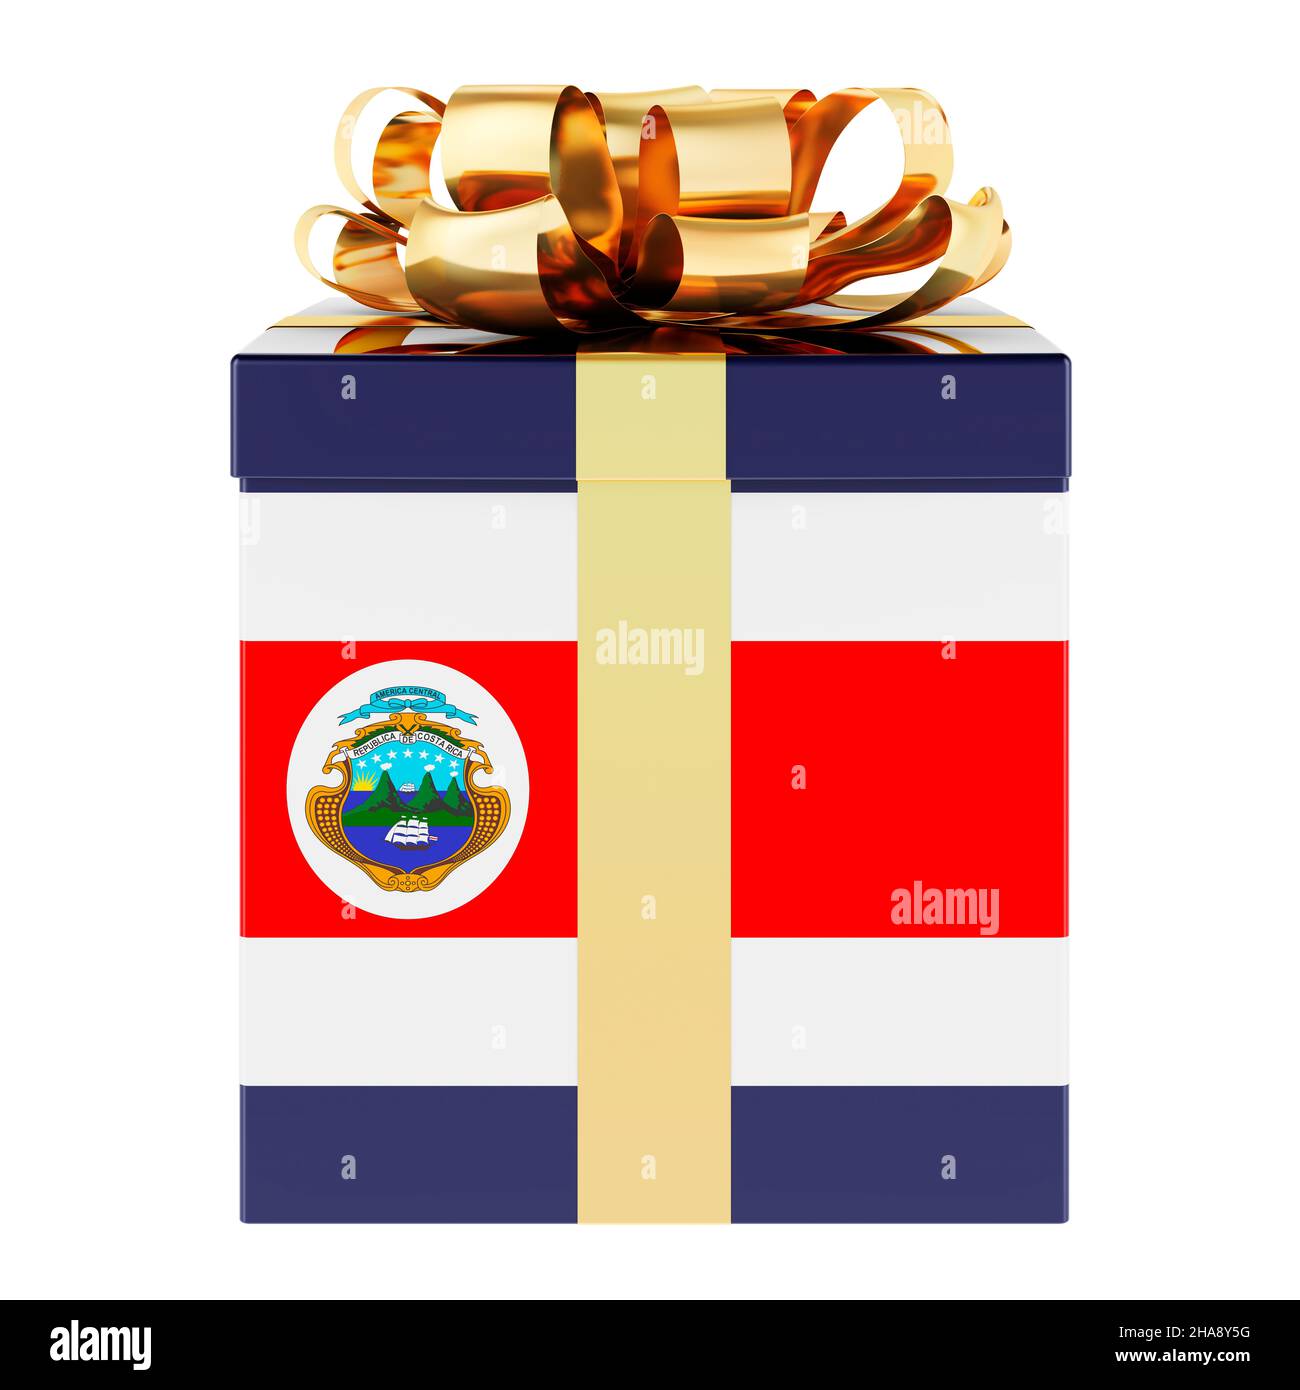 Christmas costa rica Banque d'images détourées - Alamy